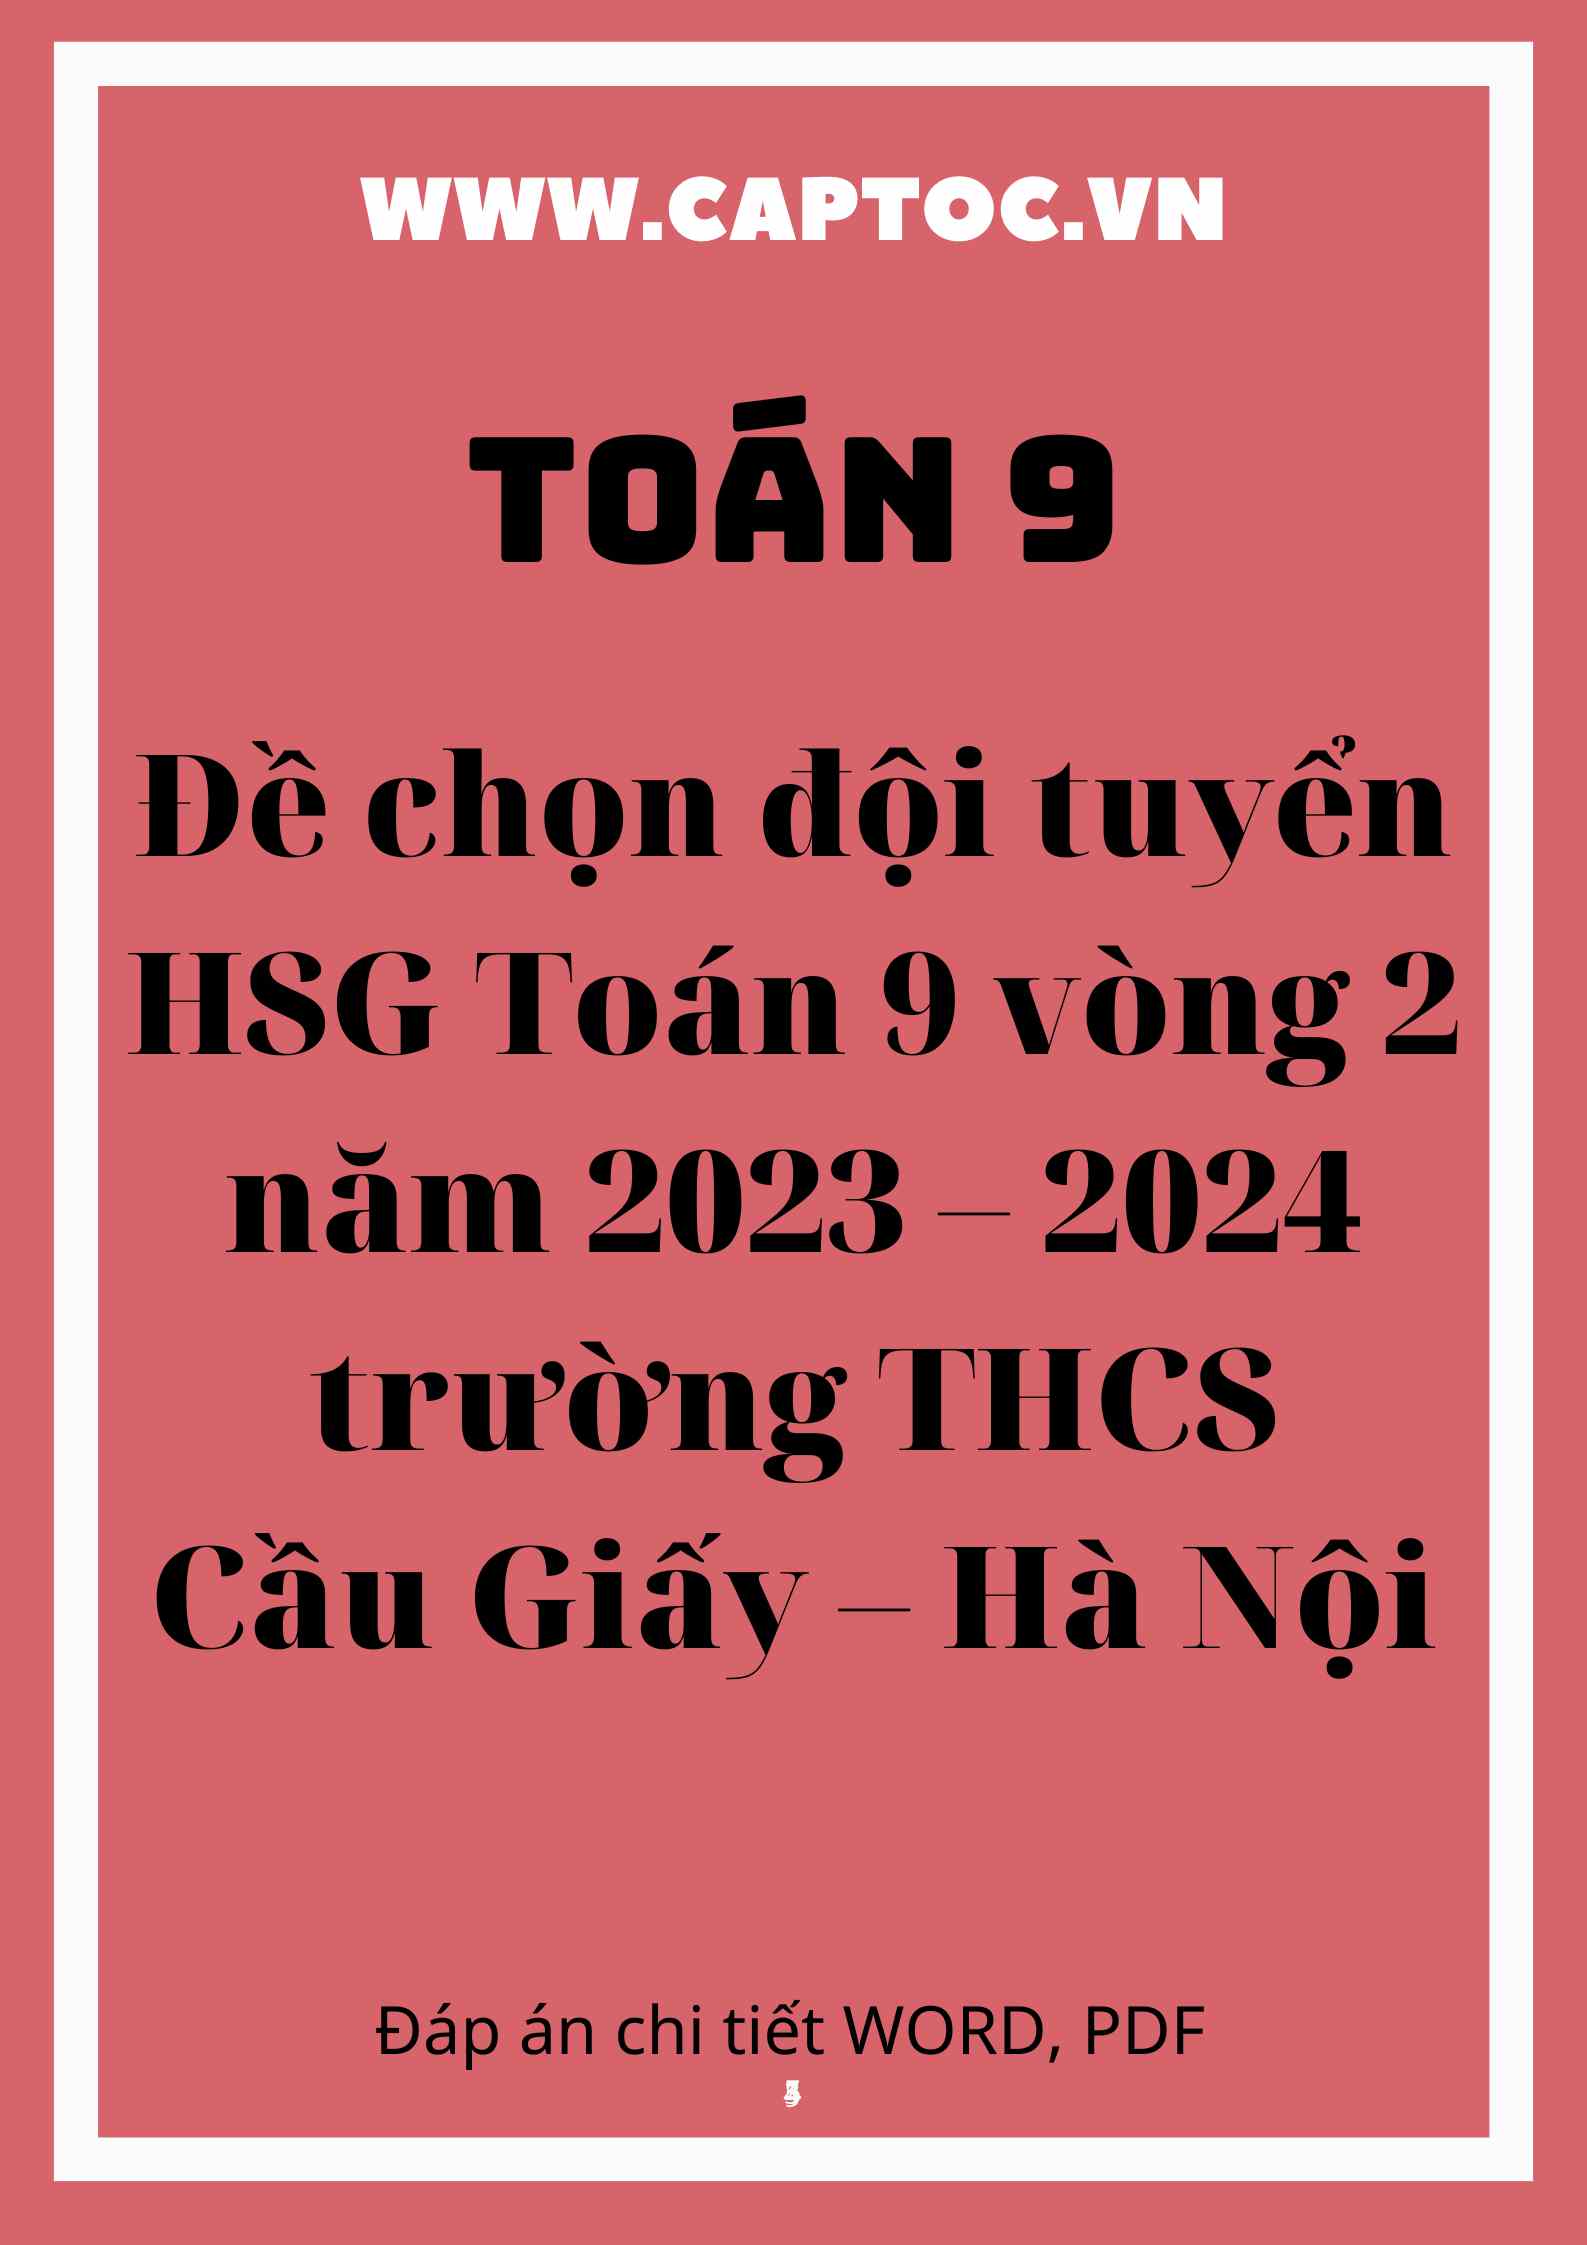 Đề chọn đội tuyển HSG Toán 9 vòng 2 năm 2023 – 2024 trường THCS Cầu Giấy – Hà Nội